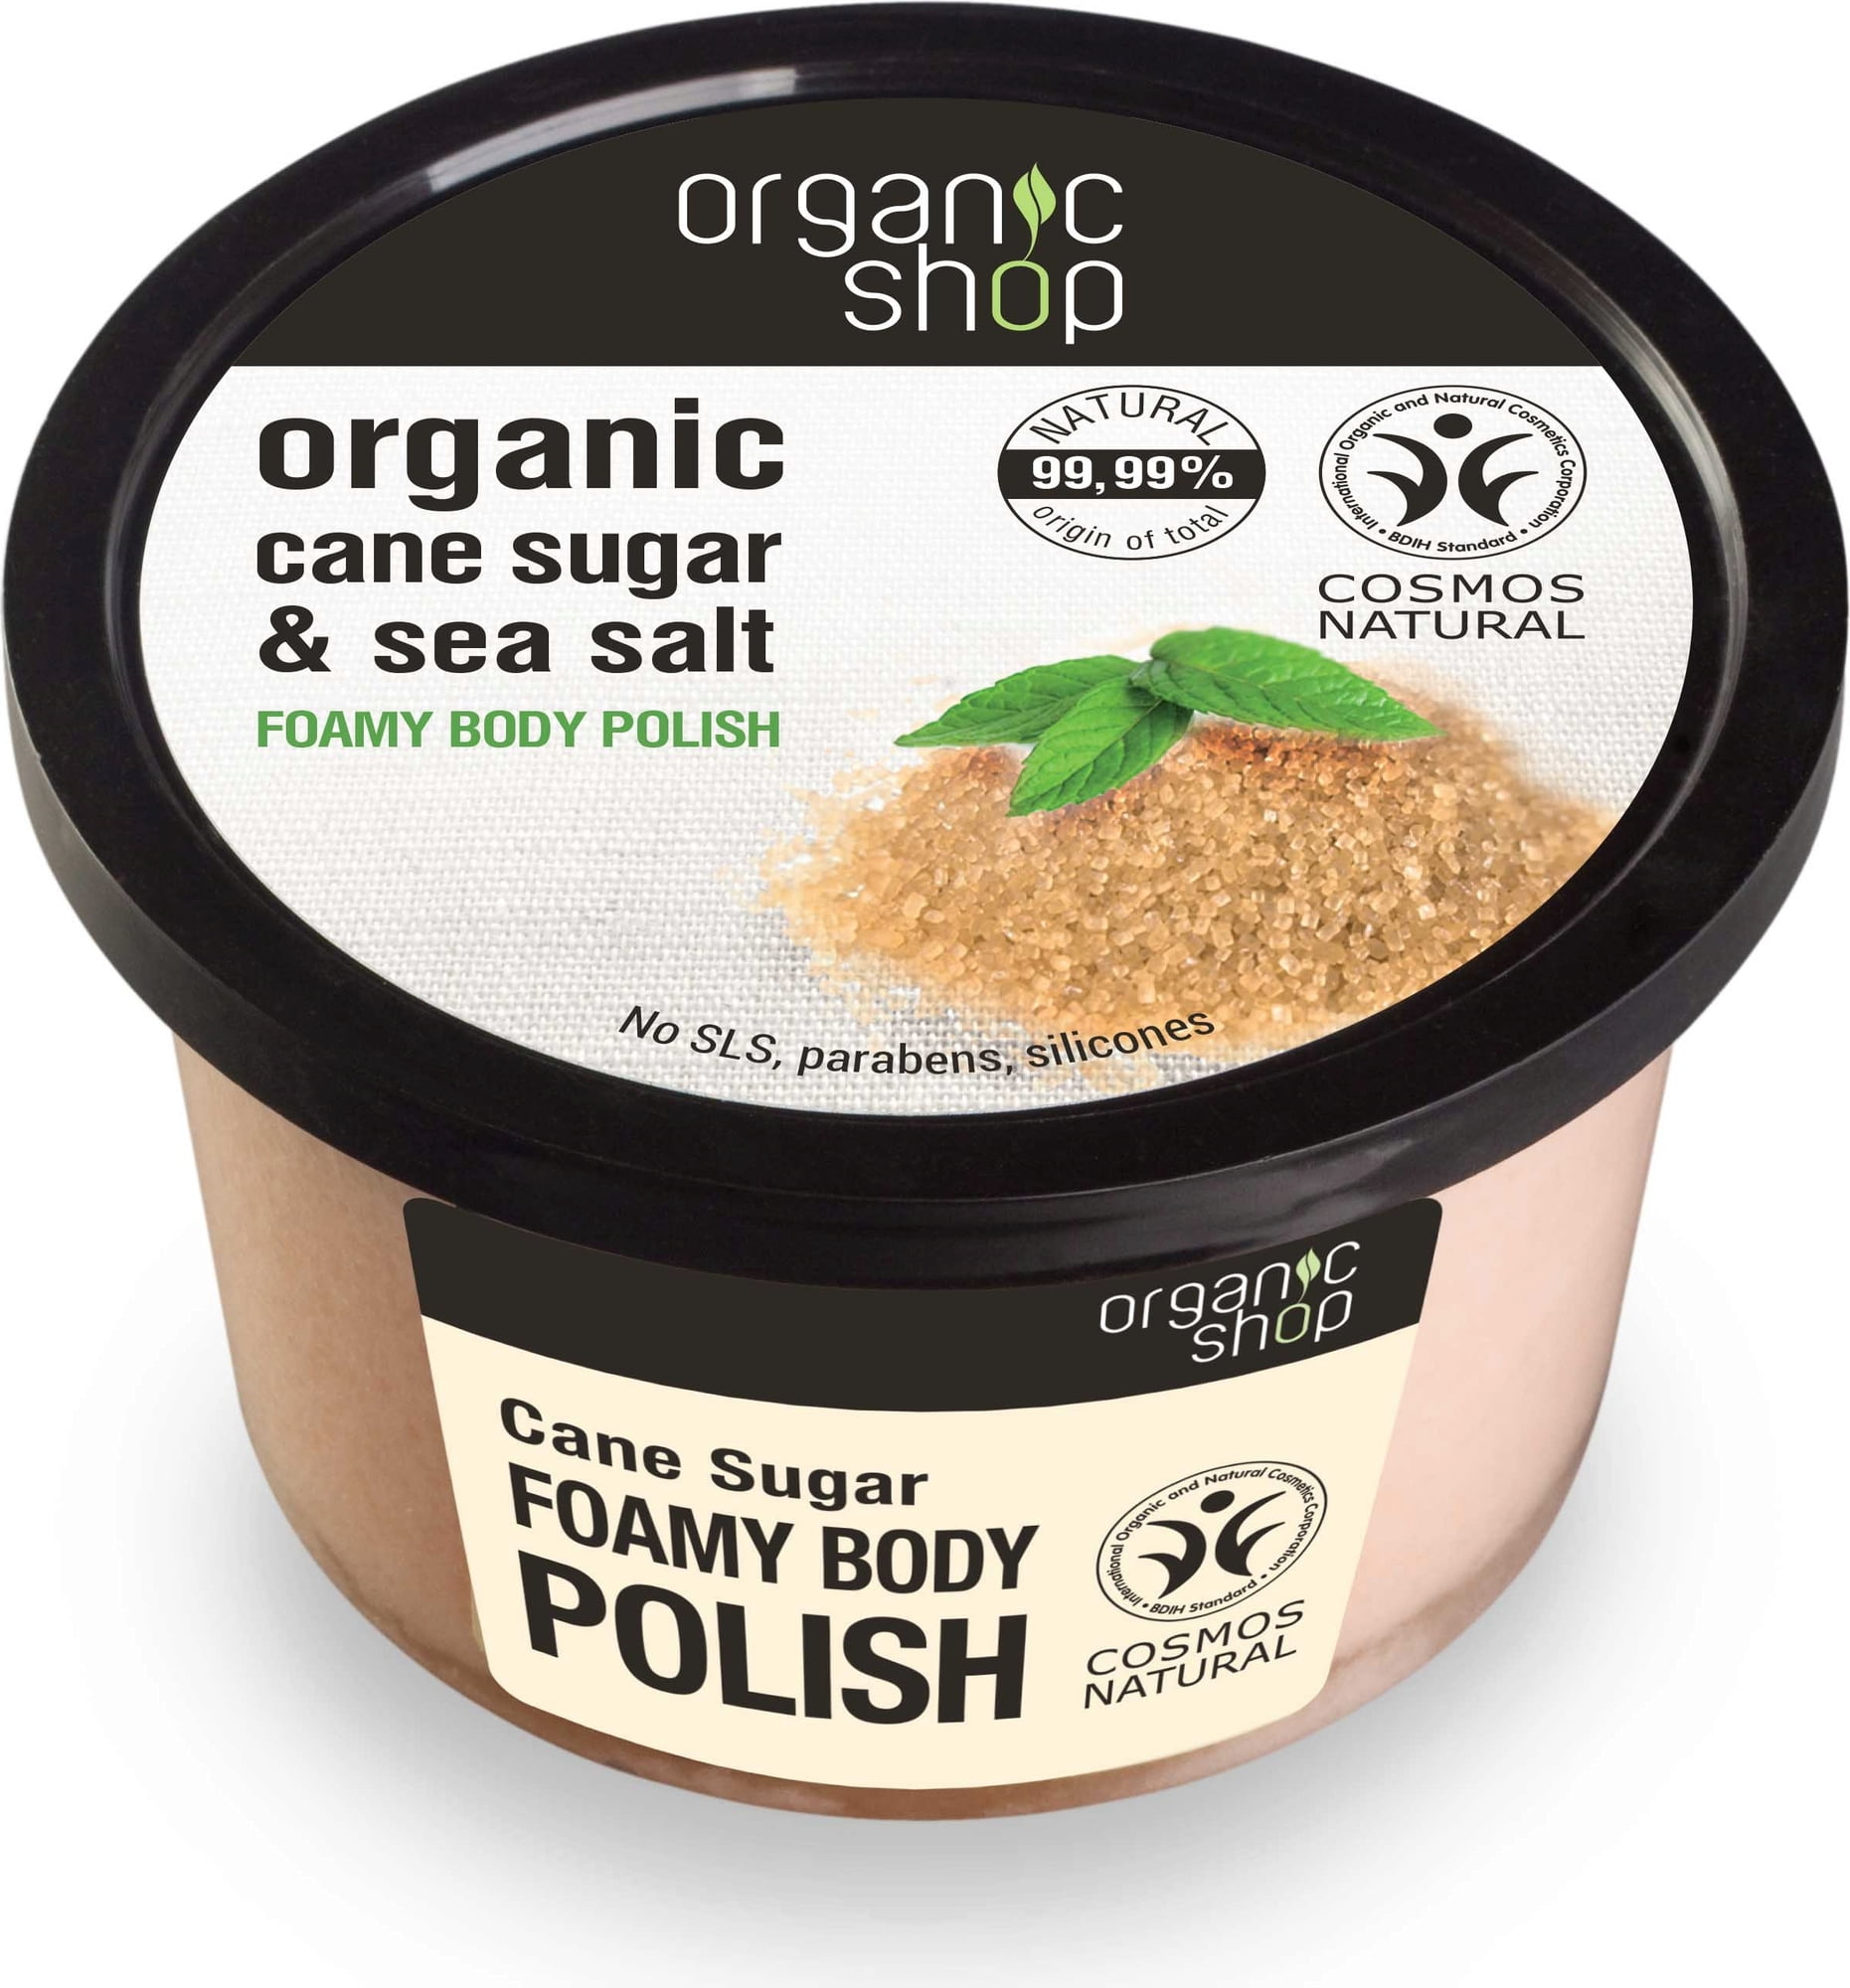 Organic Shop Cane Sugar Foamy Body Polish